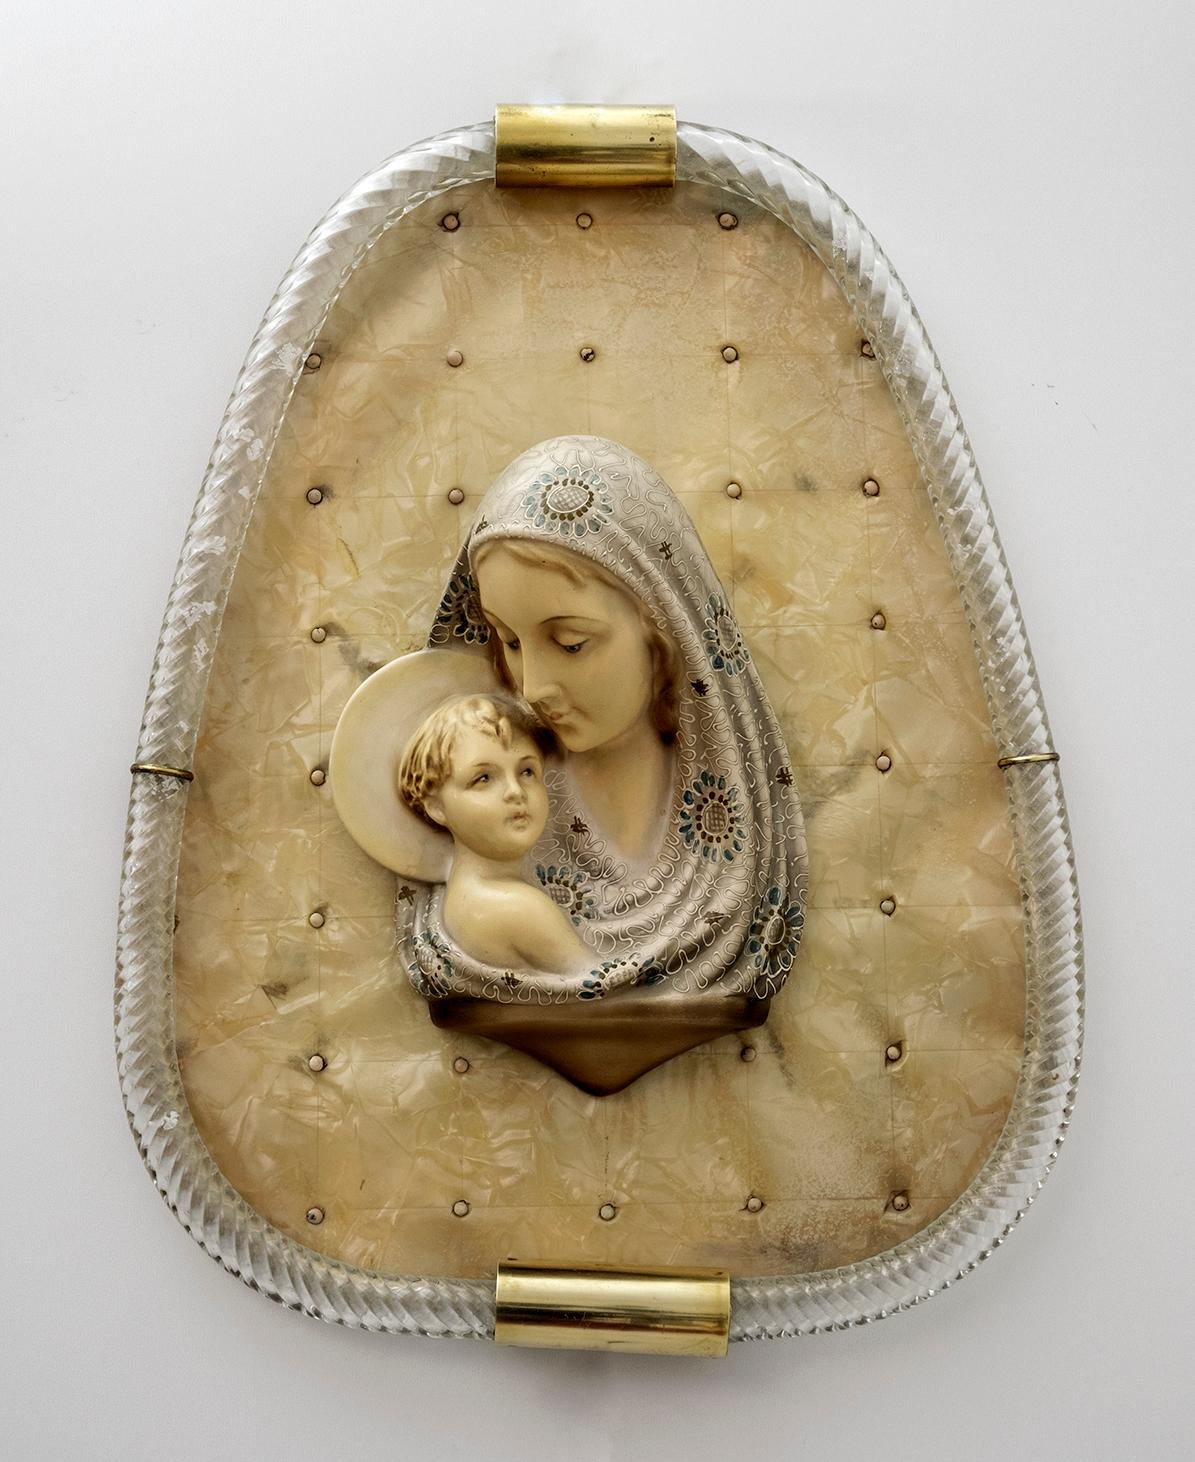 Cadre torchon en verre de Murano, production Venini, intérieur Madone à l'enfant en plâtre sur une base en xylonite, datant du début des années 1950.
Modèle breveté.